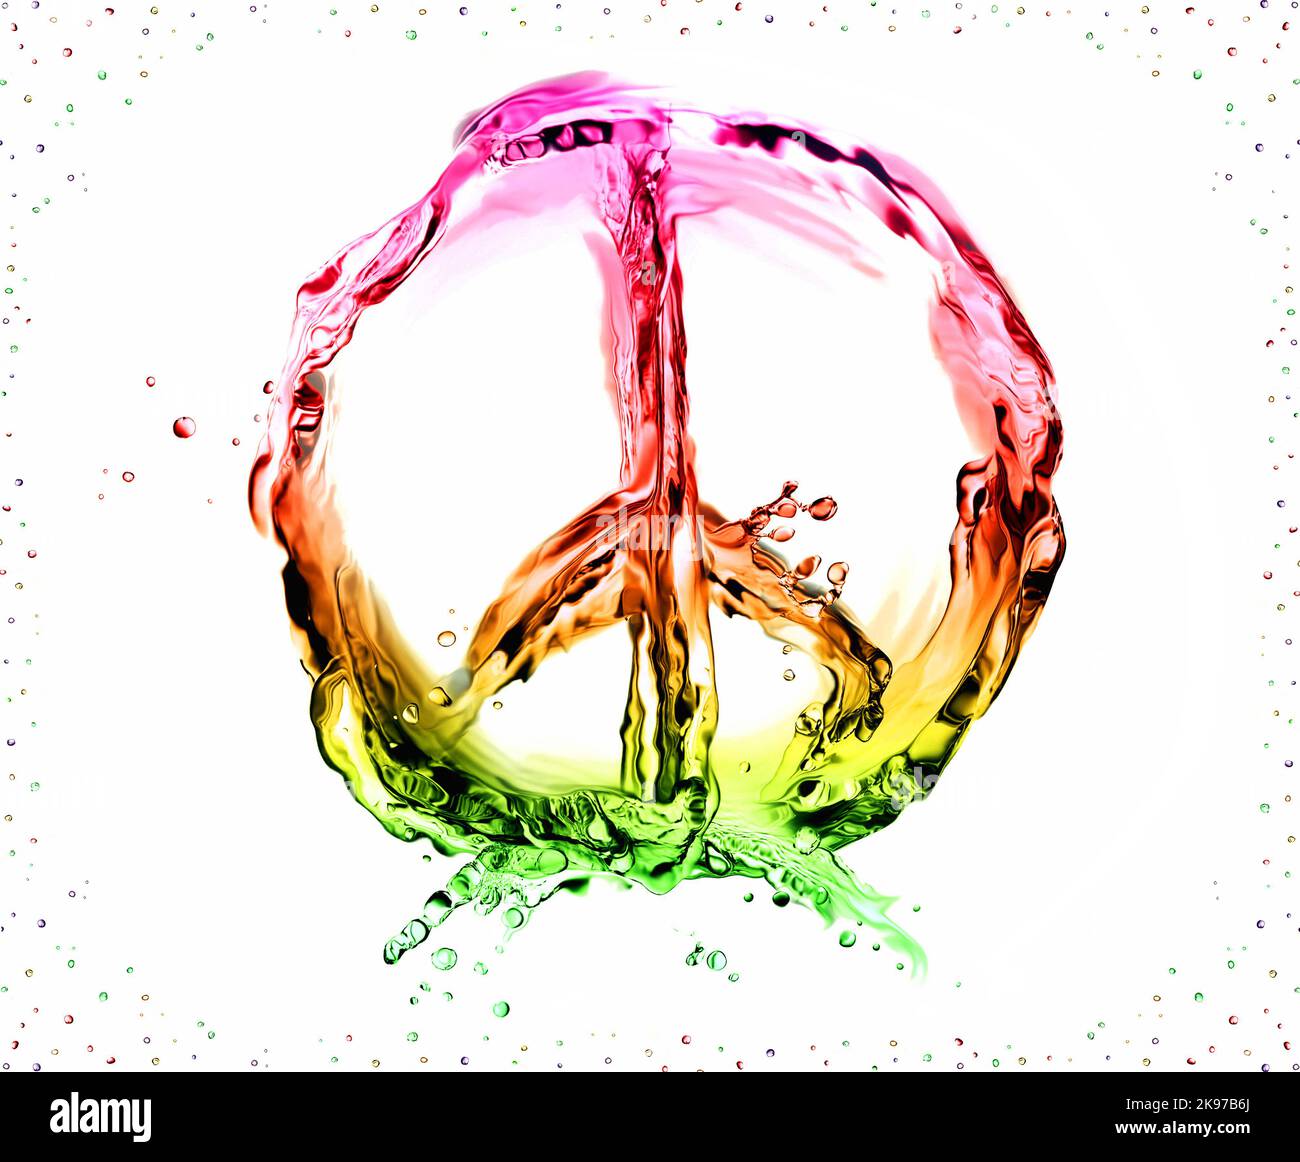 Das Peace & Love-Symbol aus bunt-farbiger Flüssigkeit auf Weiß und umrahmt von Blasen. Stockfoto